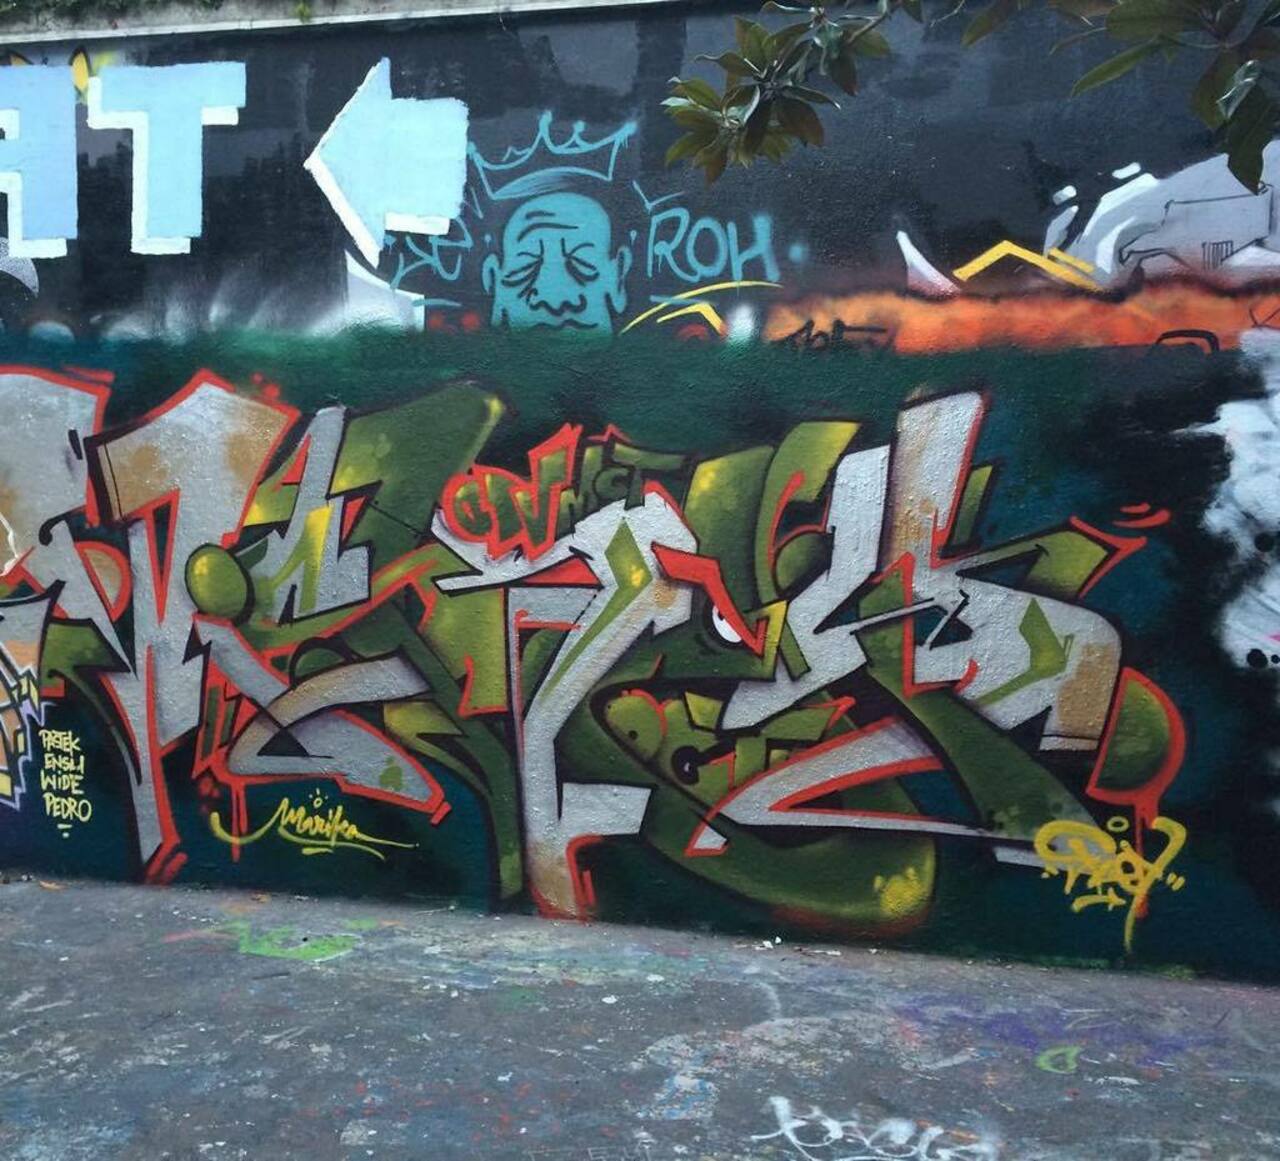 via #insta_fdy "http://ift.tt/1VhiBXx" #graffiti #streetart http://t.co/0j8r9um2la